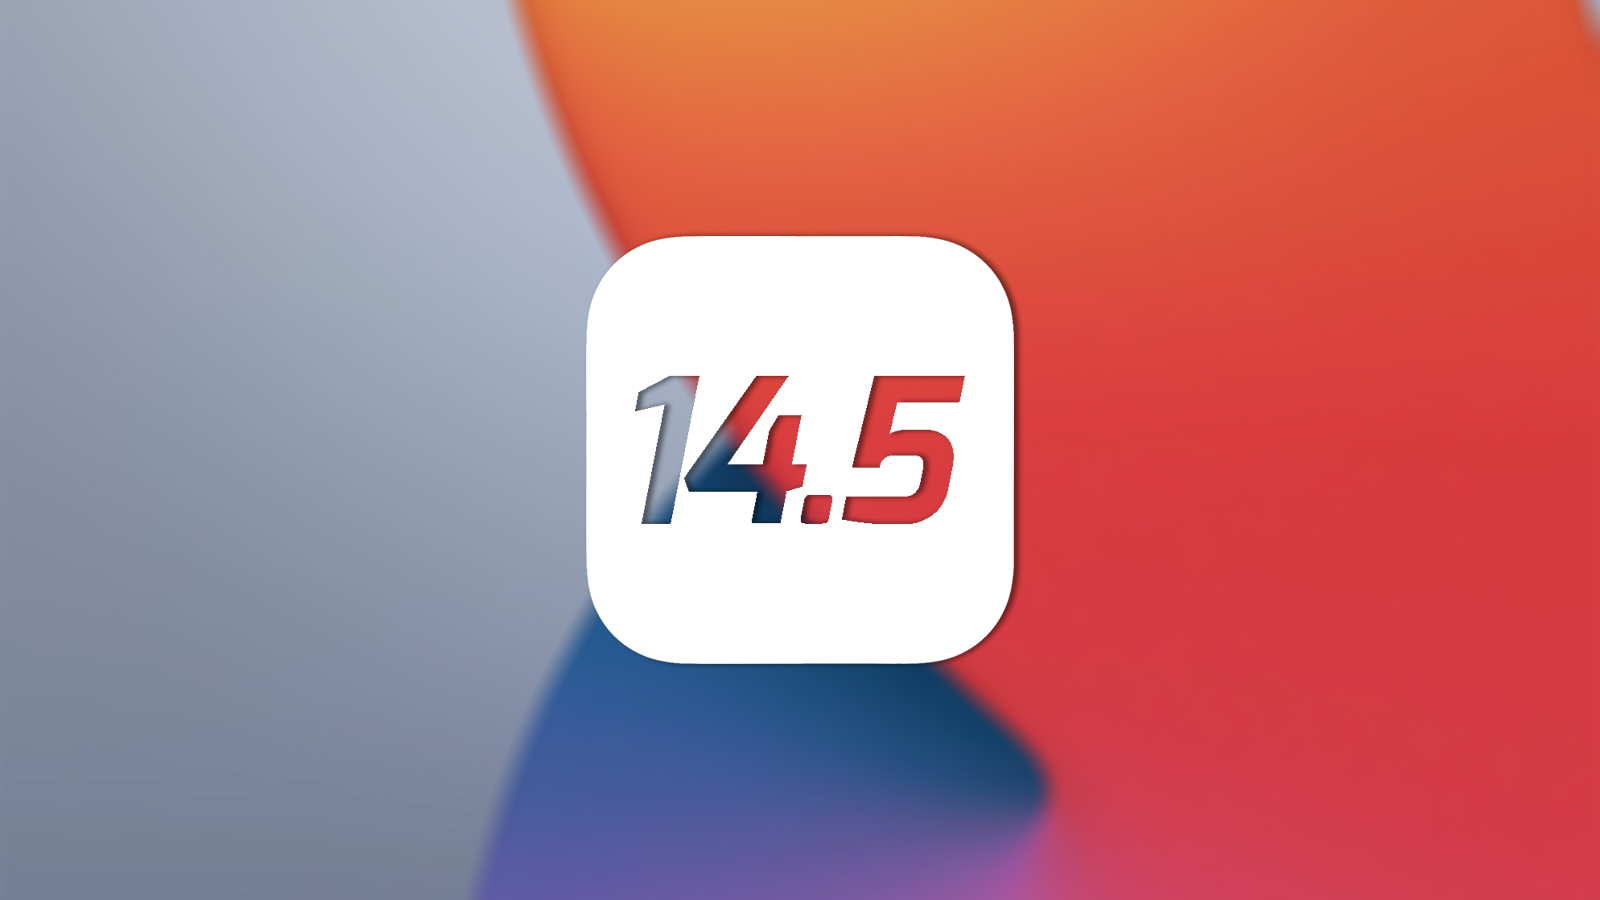 الأخبار 27 أبريل 2021 2comments شفافية تتبع التطبيقات: هذه هي الطريقة التي تعمل بها ميزة iOS 14.5 الجديدة